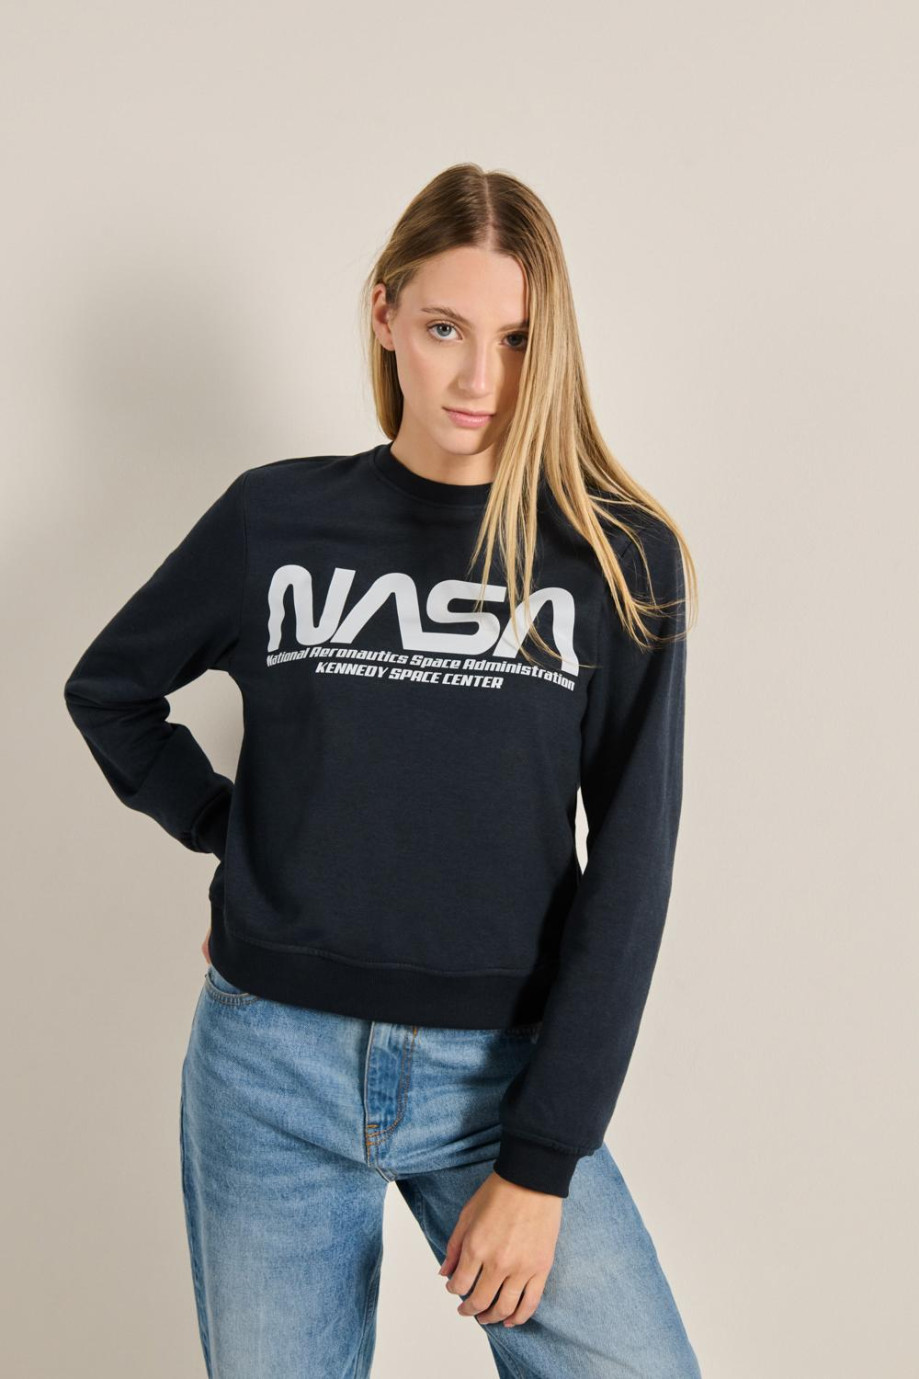 Buzo unicolor con cuello redondo y diseño de NASA